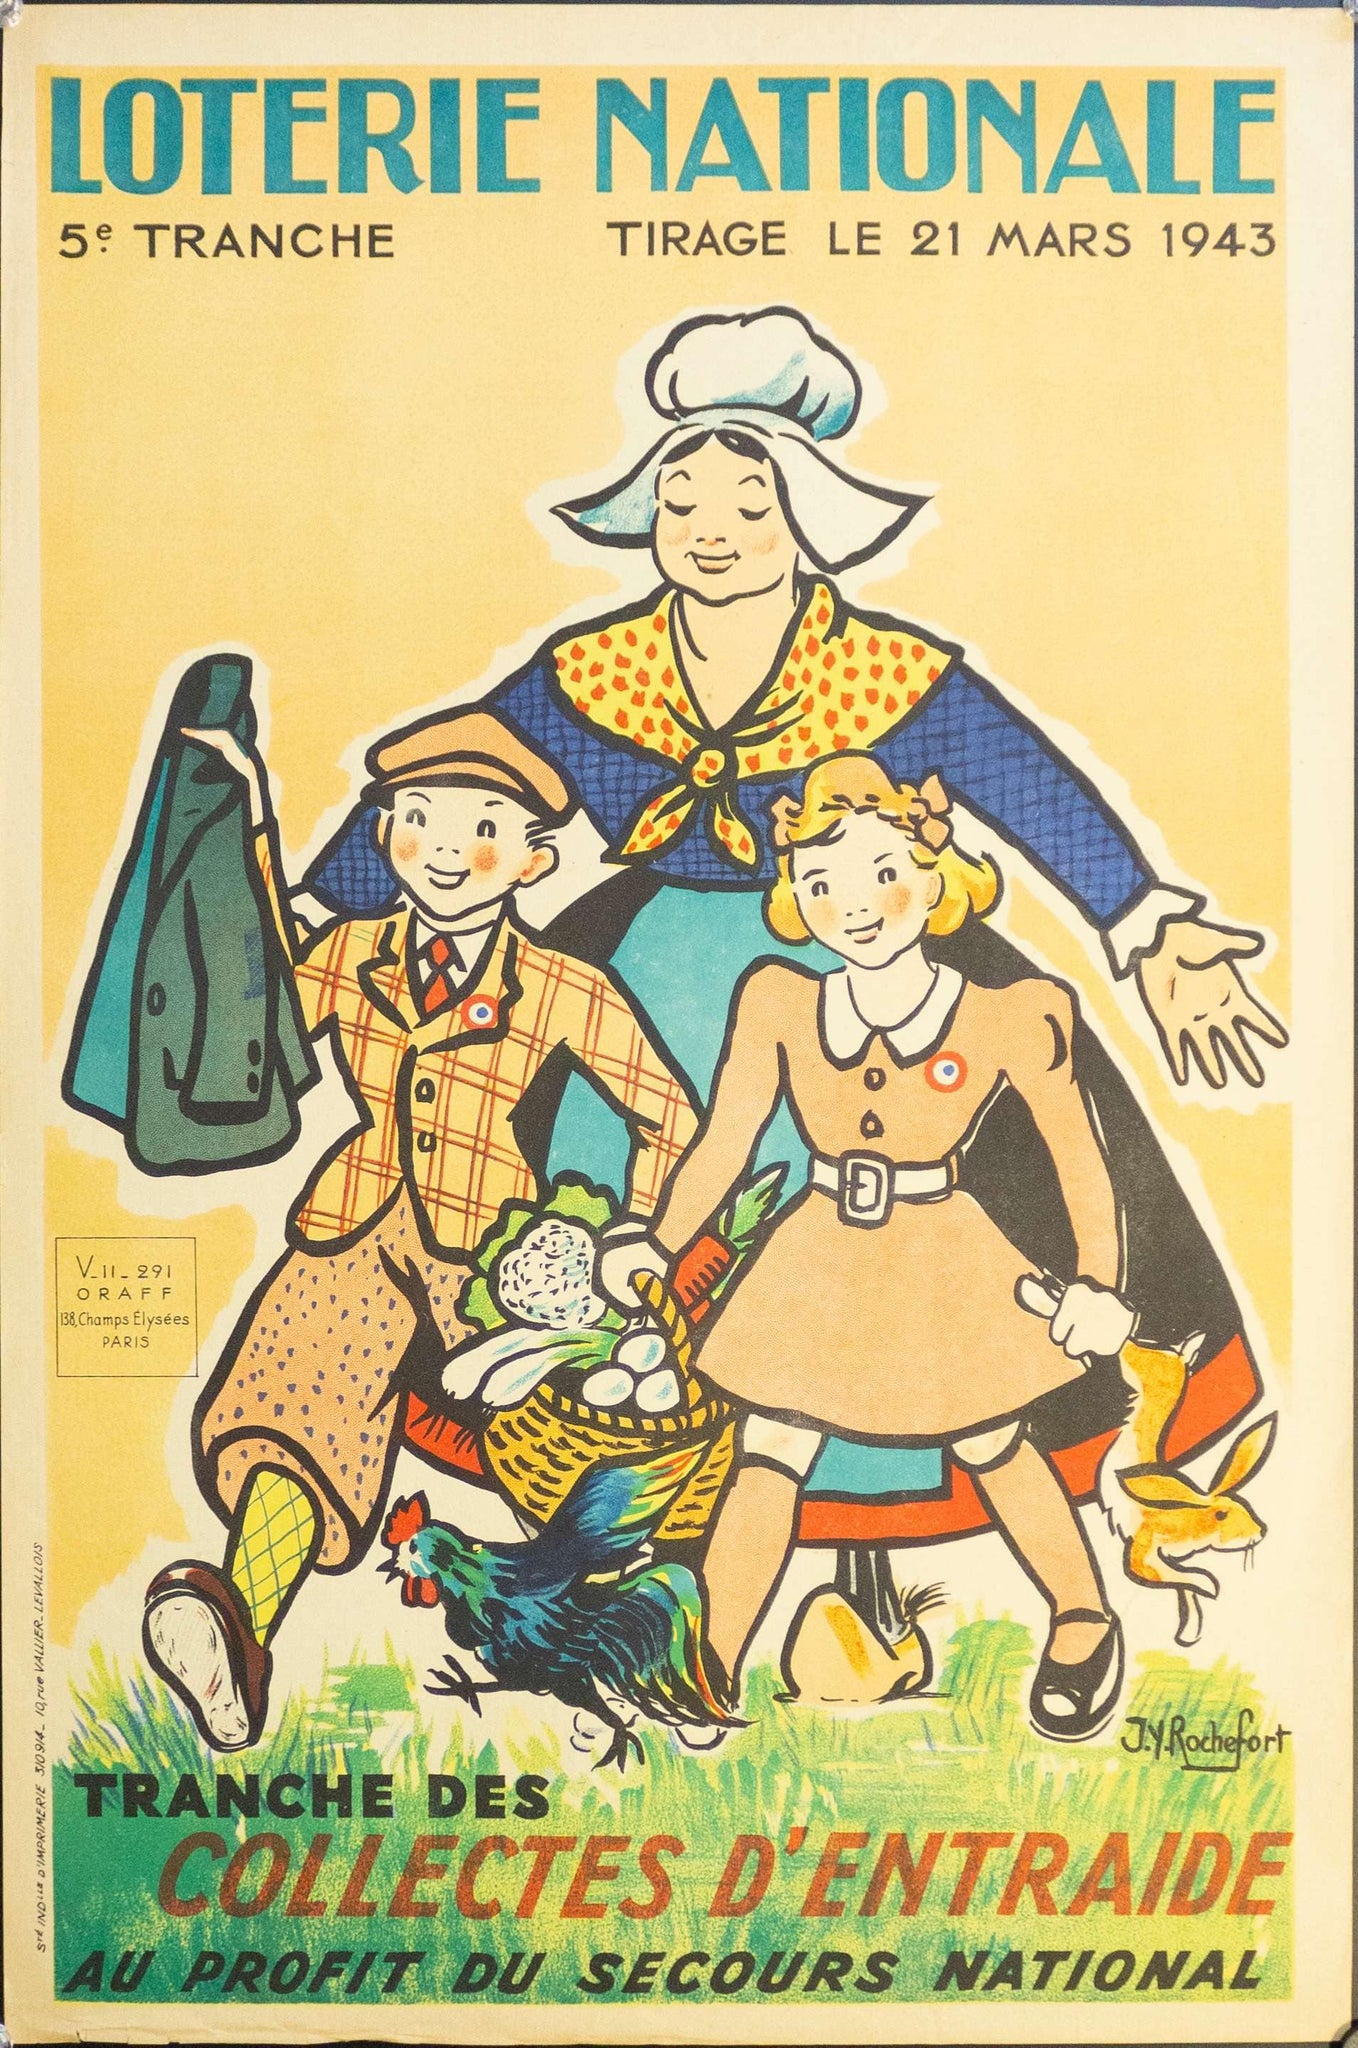 1943 Tranche Des Collectes D'entraide Au Profit Du Secours National | Loterie Nationale - Golden Age Posters